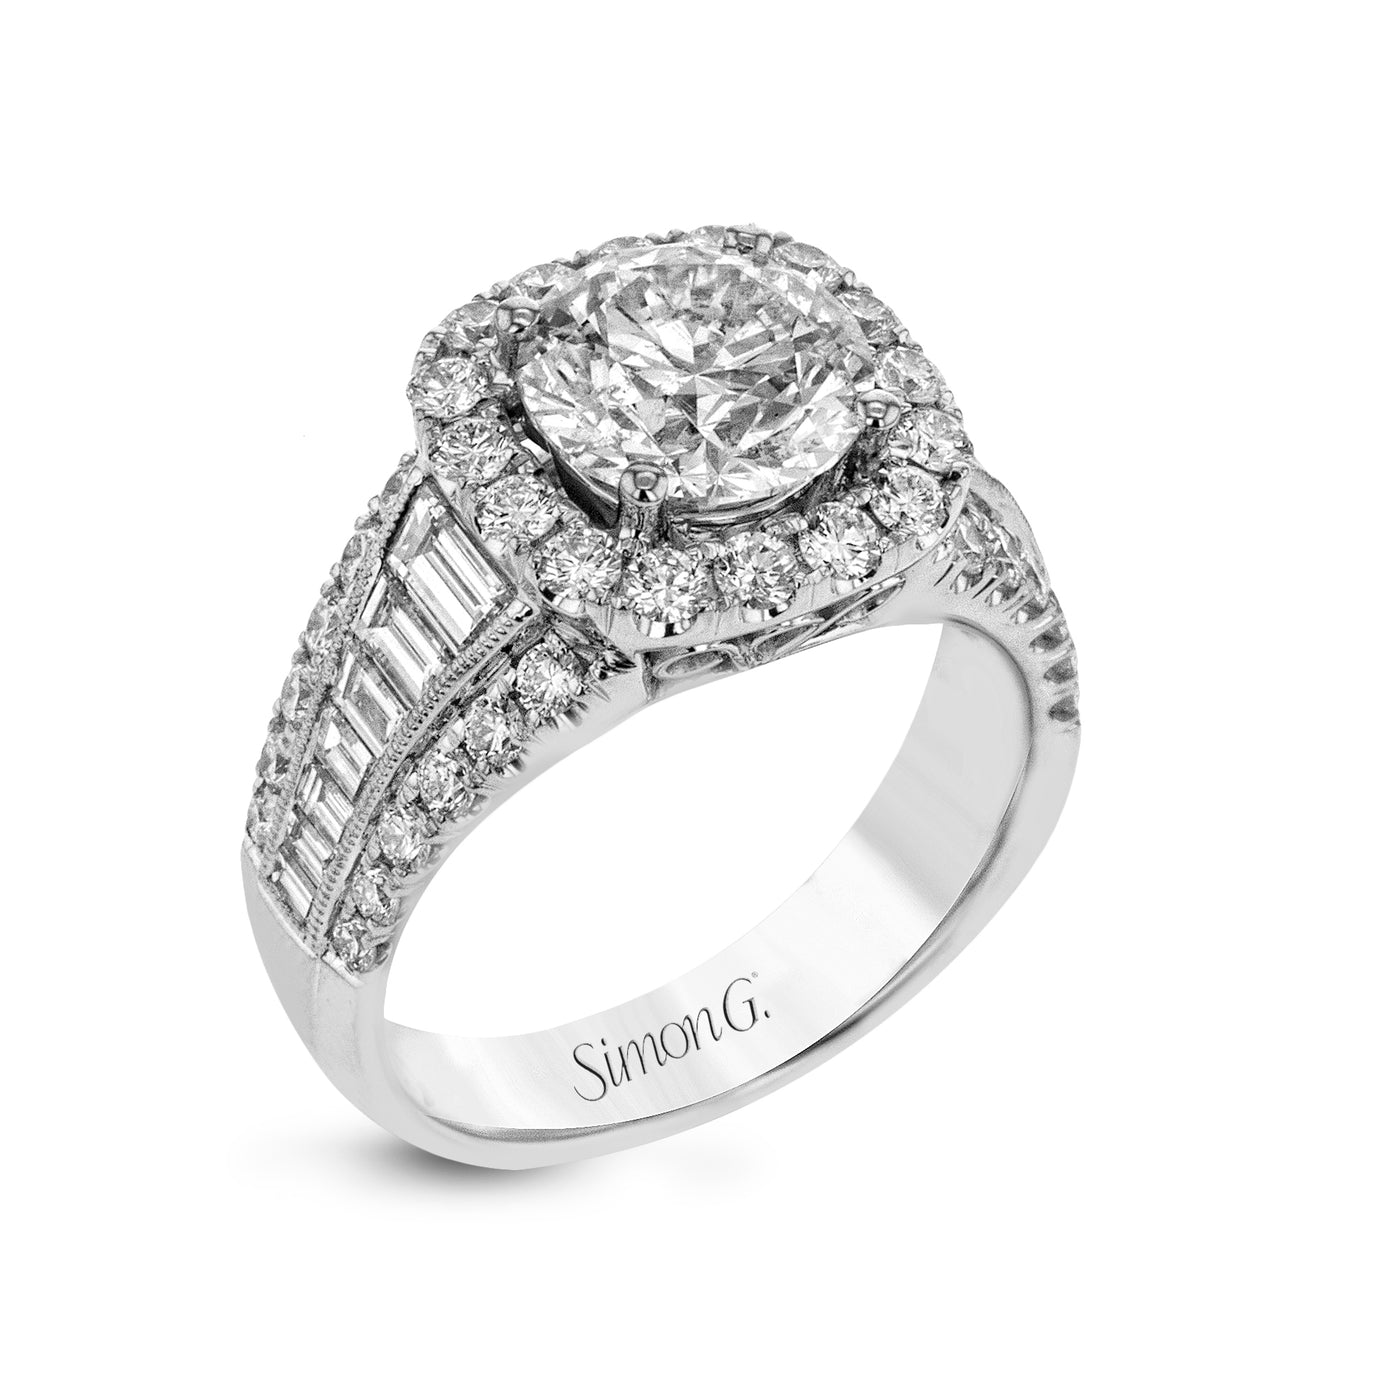 Simon G LR1164 Diamond Engagement Ring in White Gold